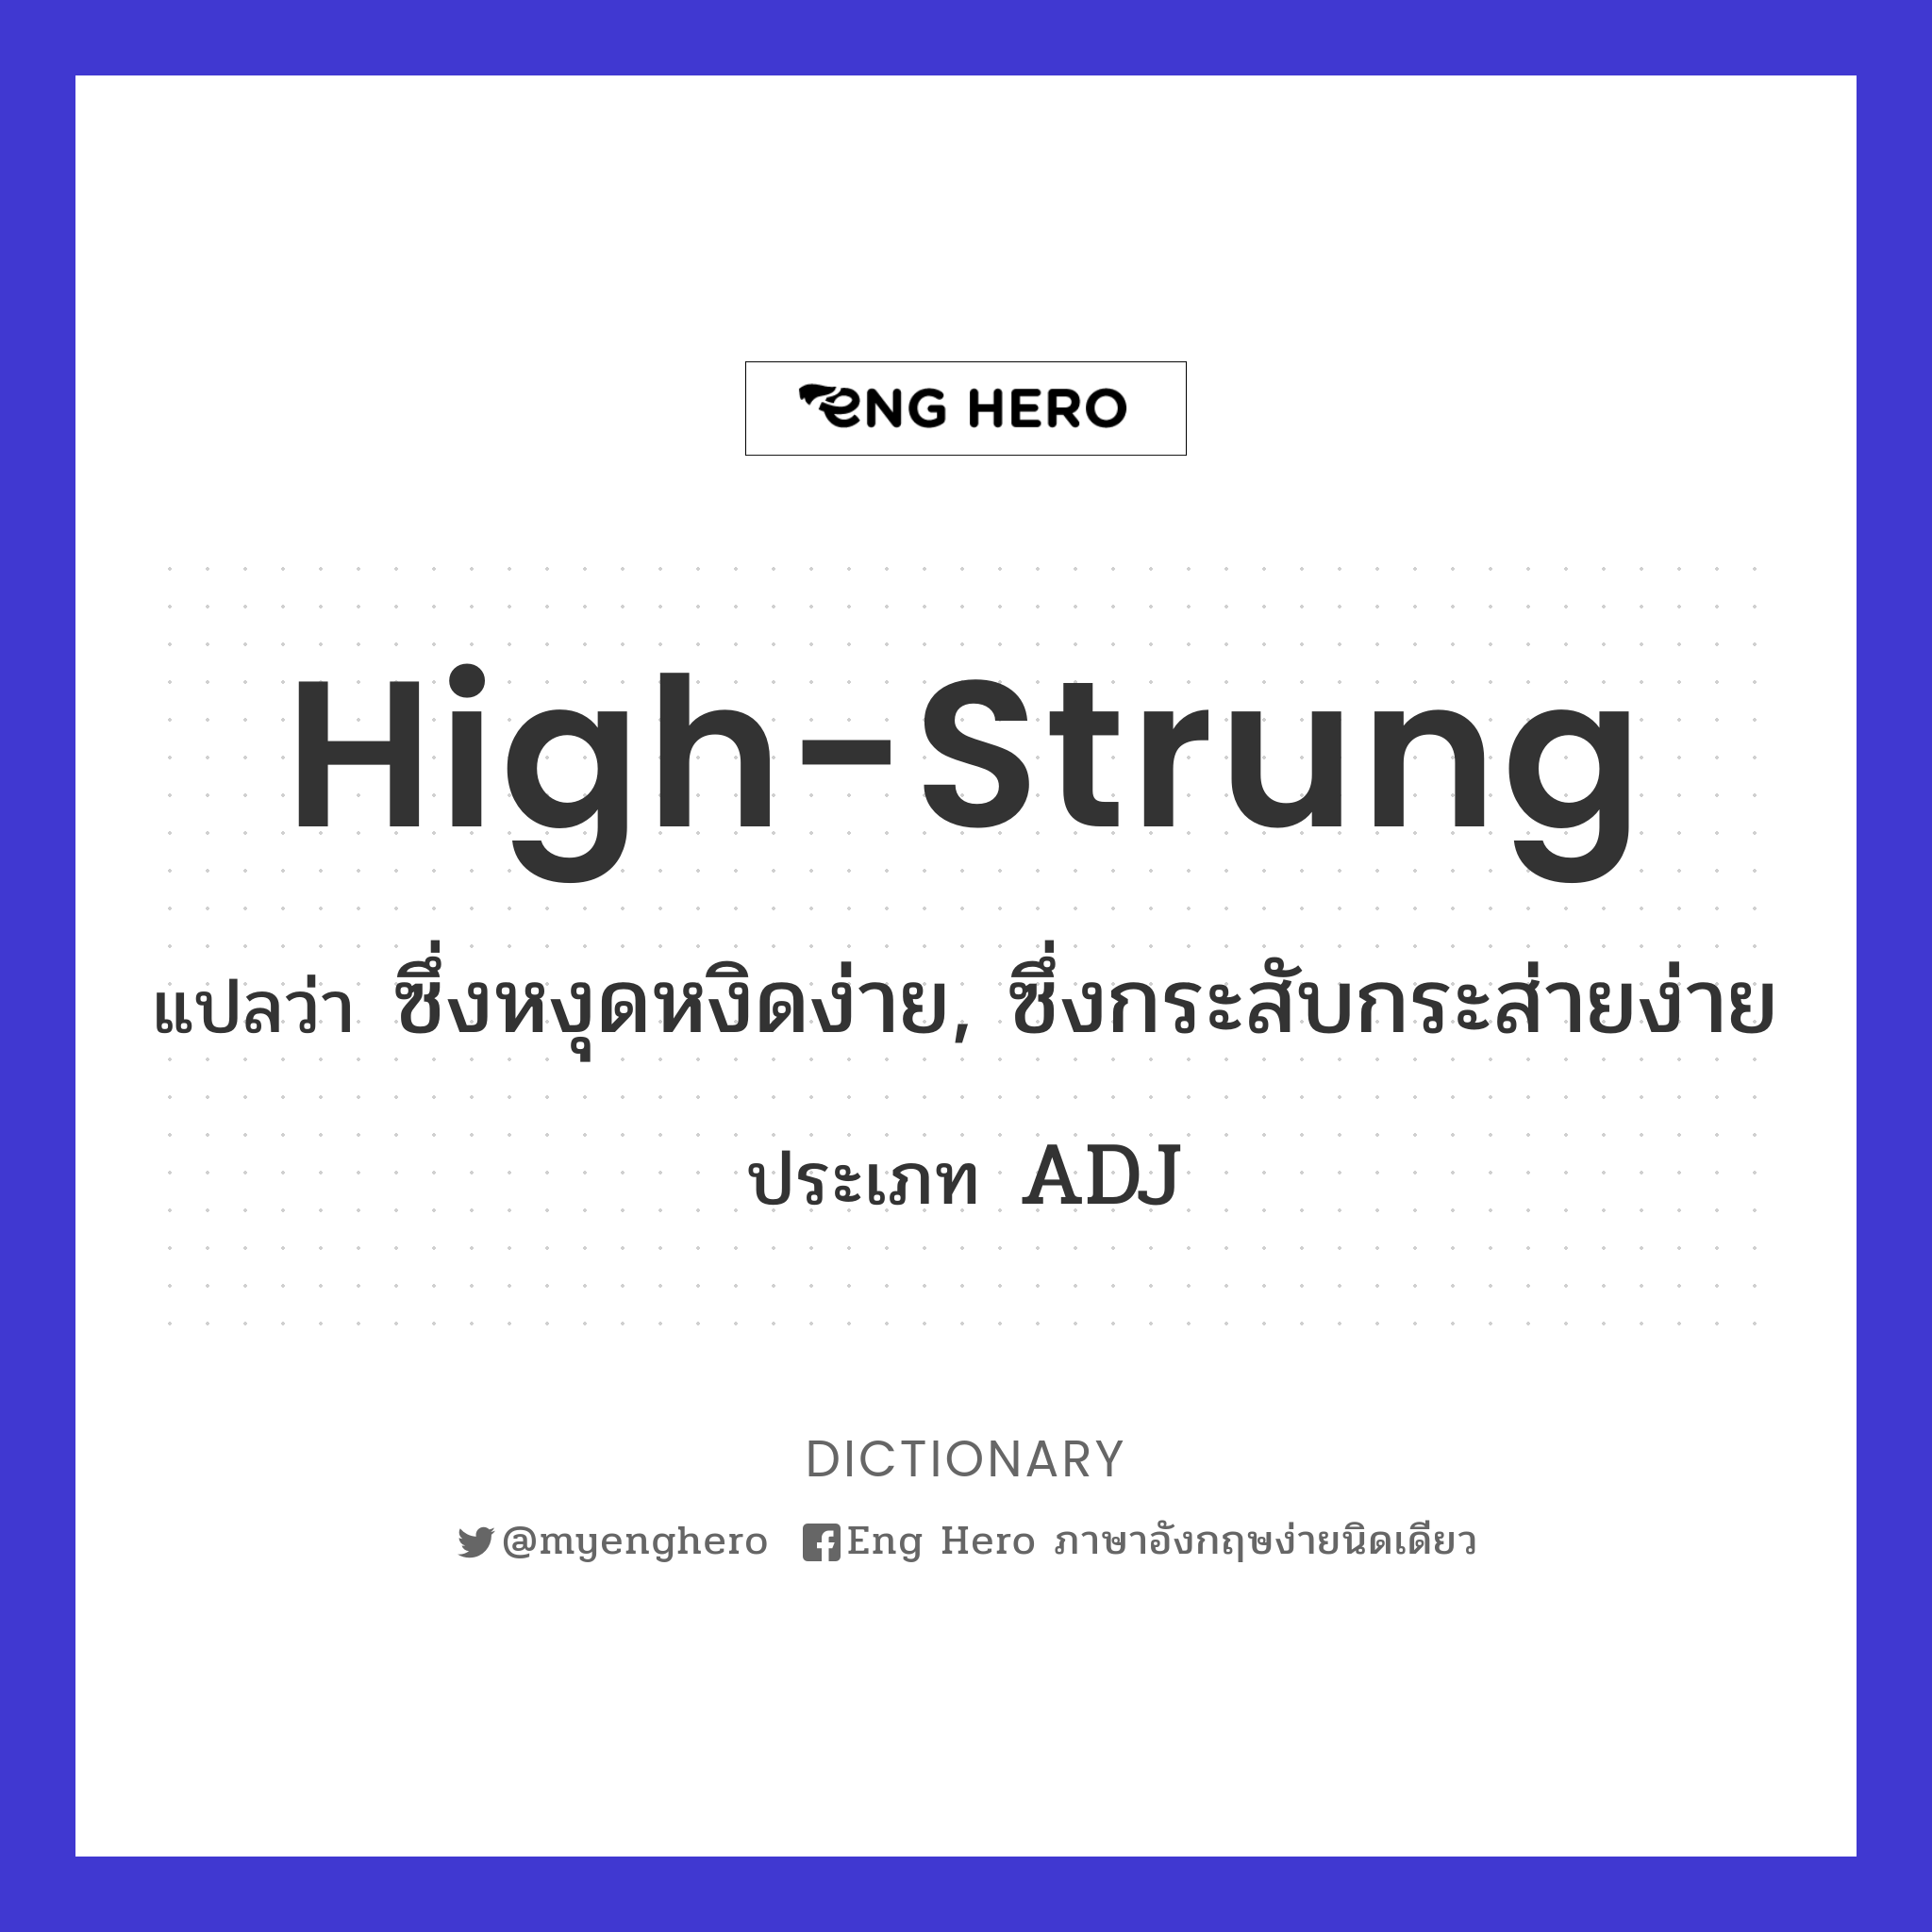 high-strung